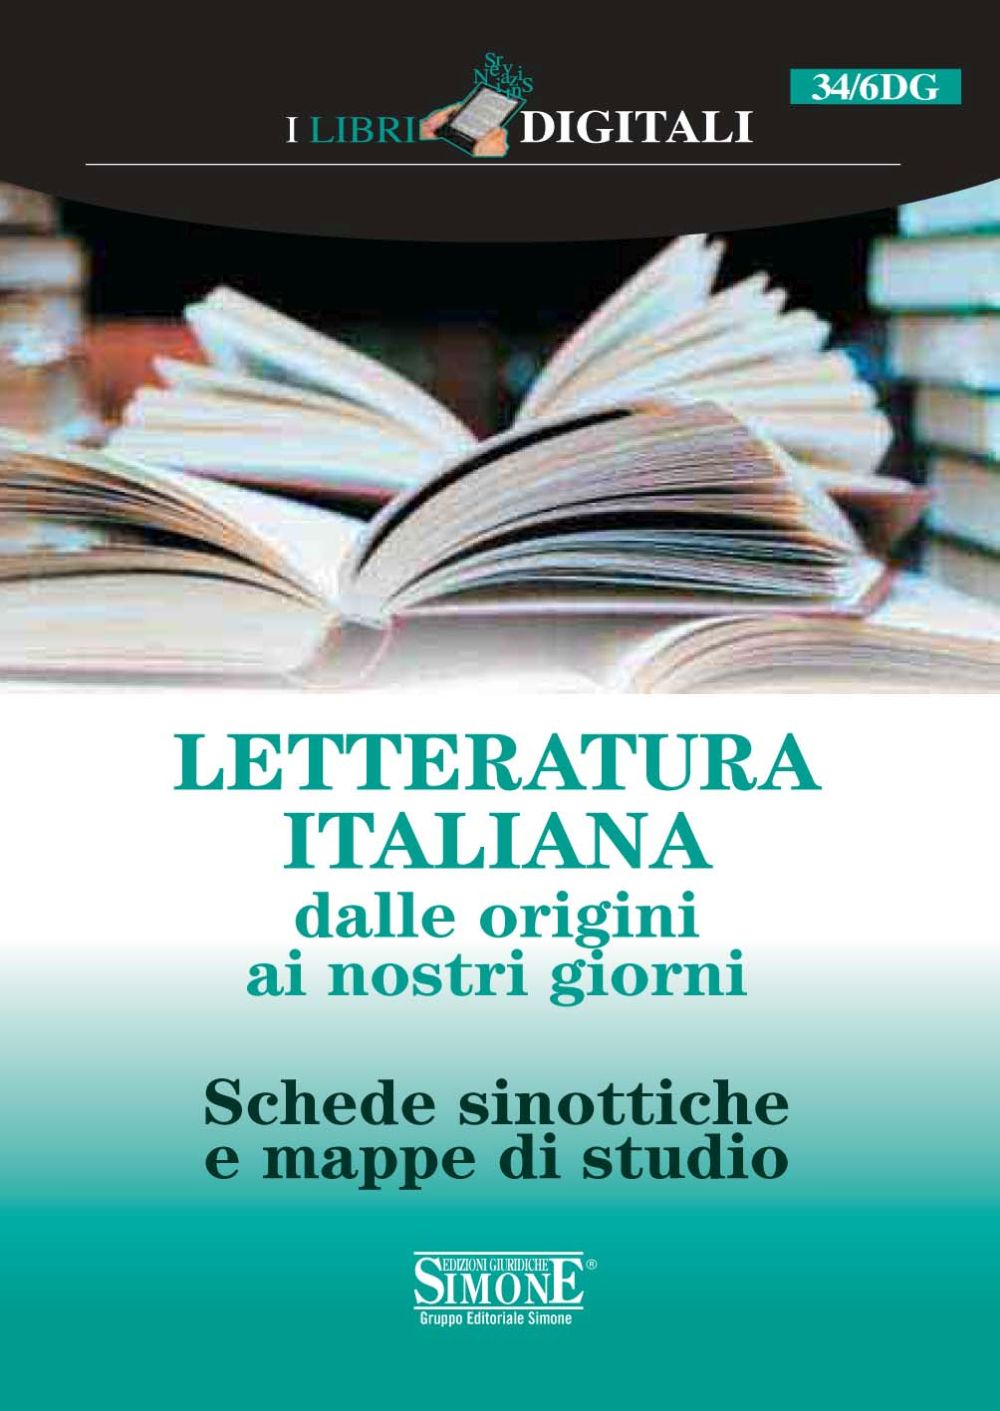 Ebook] Letteratura Italiana dalle origini ai nostri giorni - Edizioni Simone